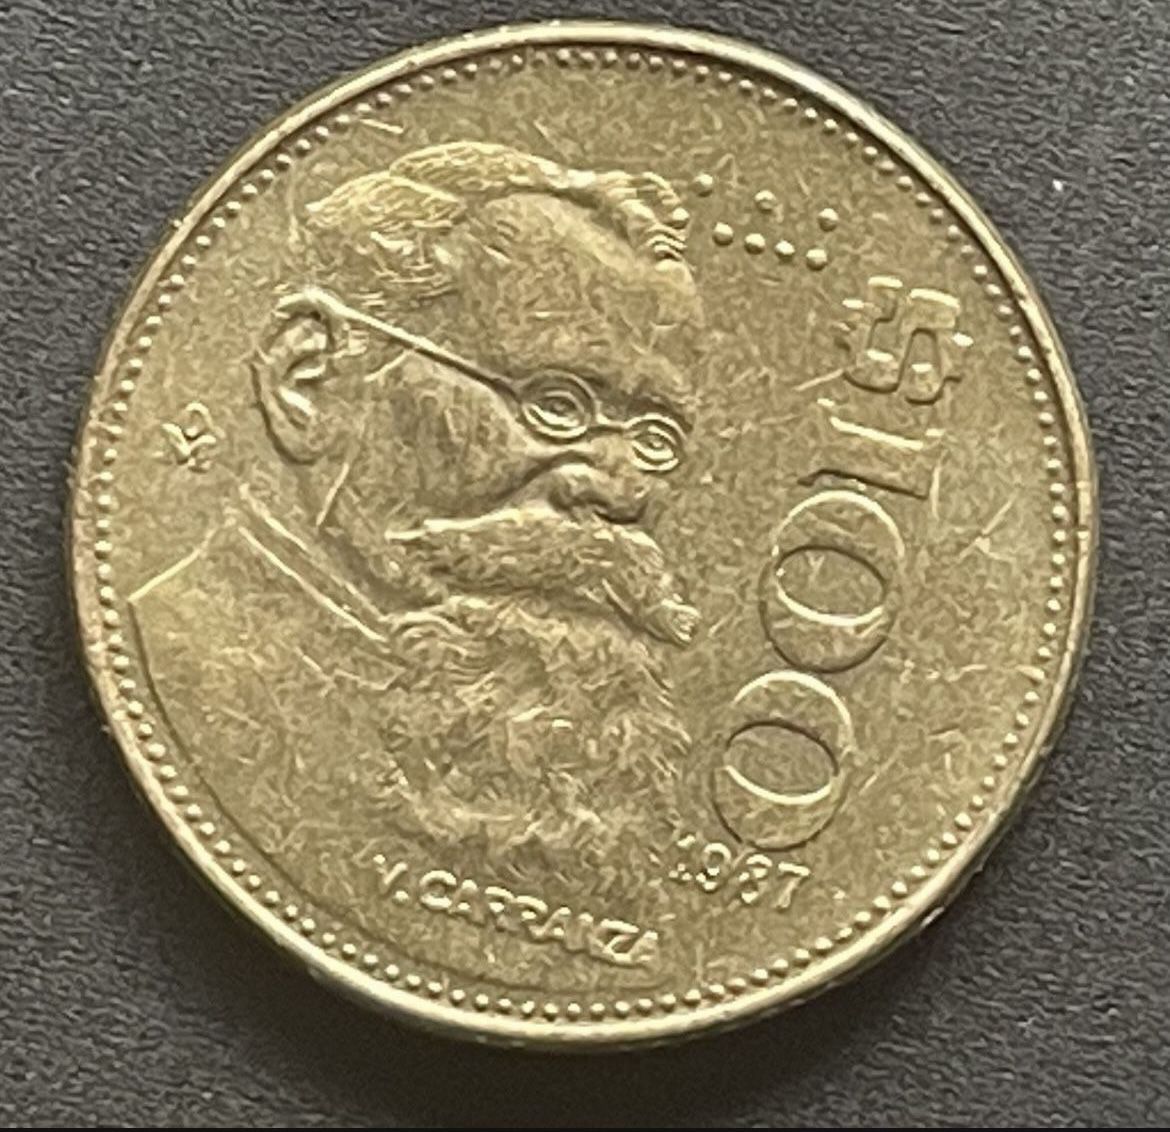 100 Pesos 1987 Coin Of Mexico 